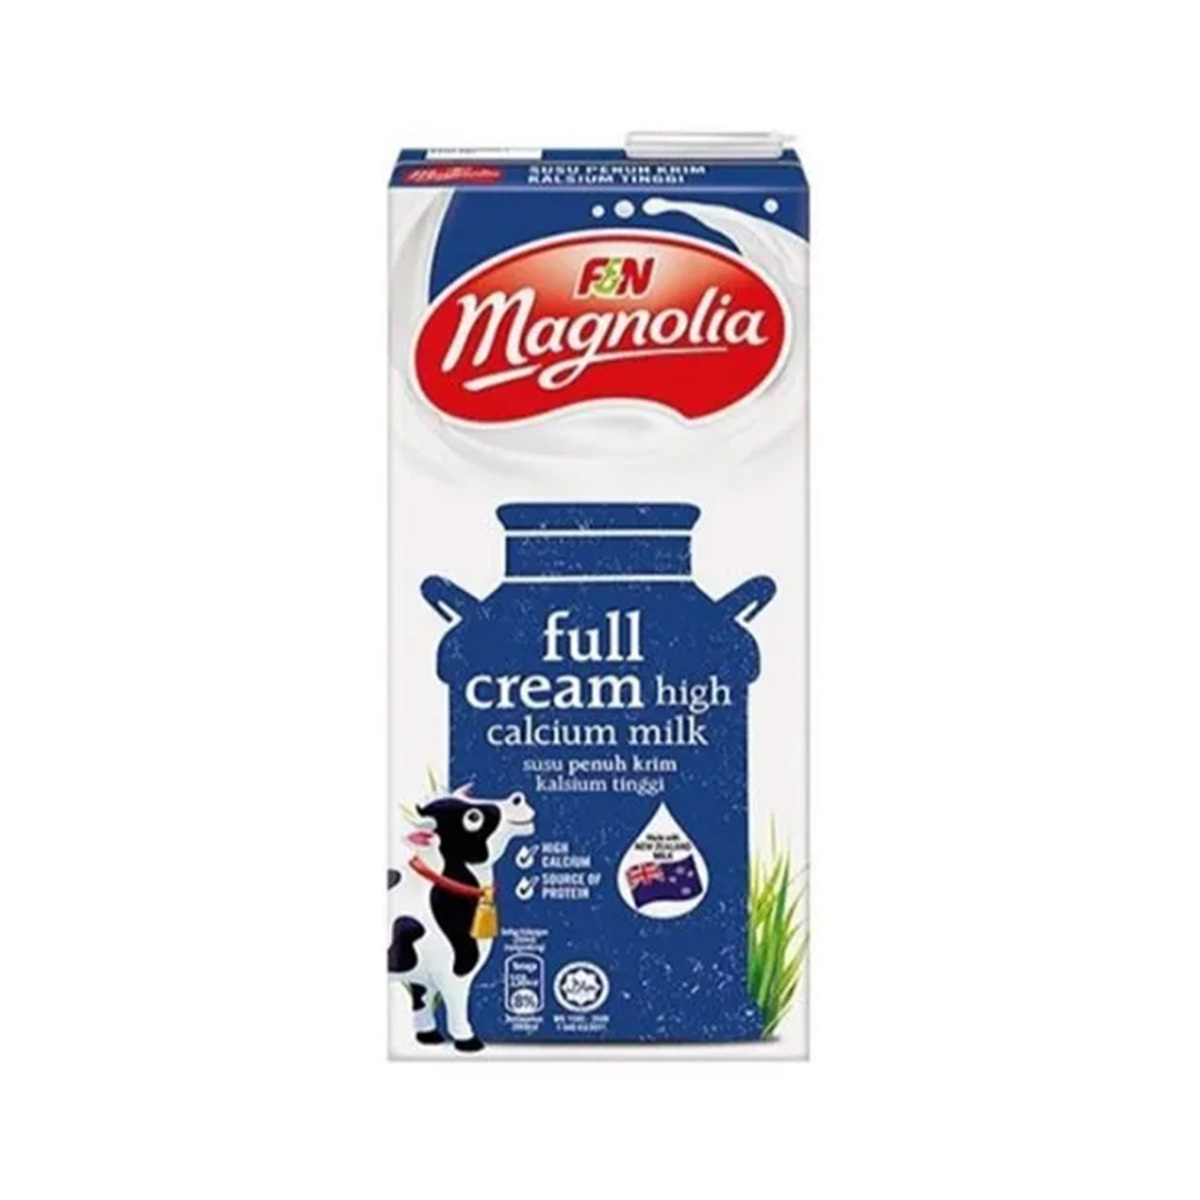 Magnolia Uht Full Cream High Calcium Milk 1Liter